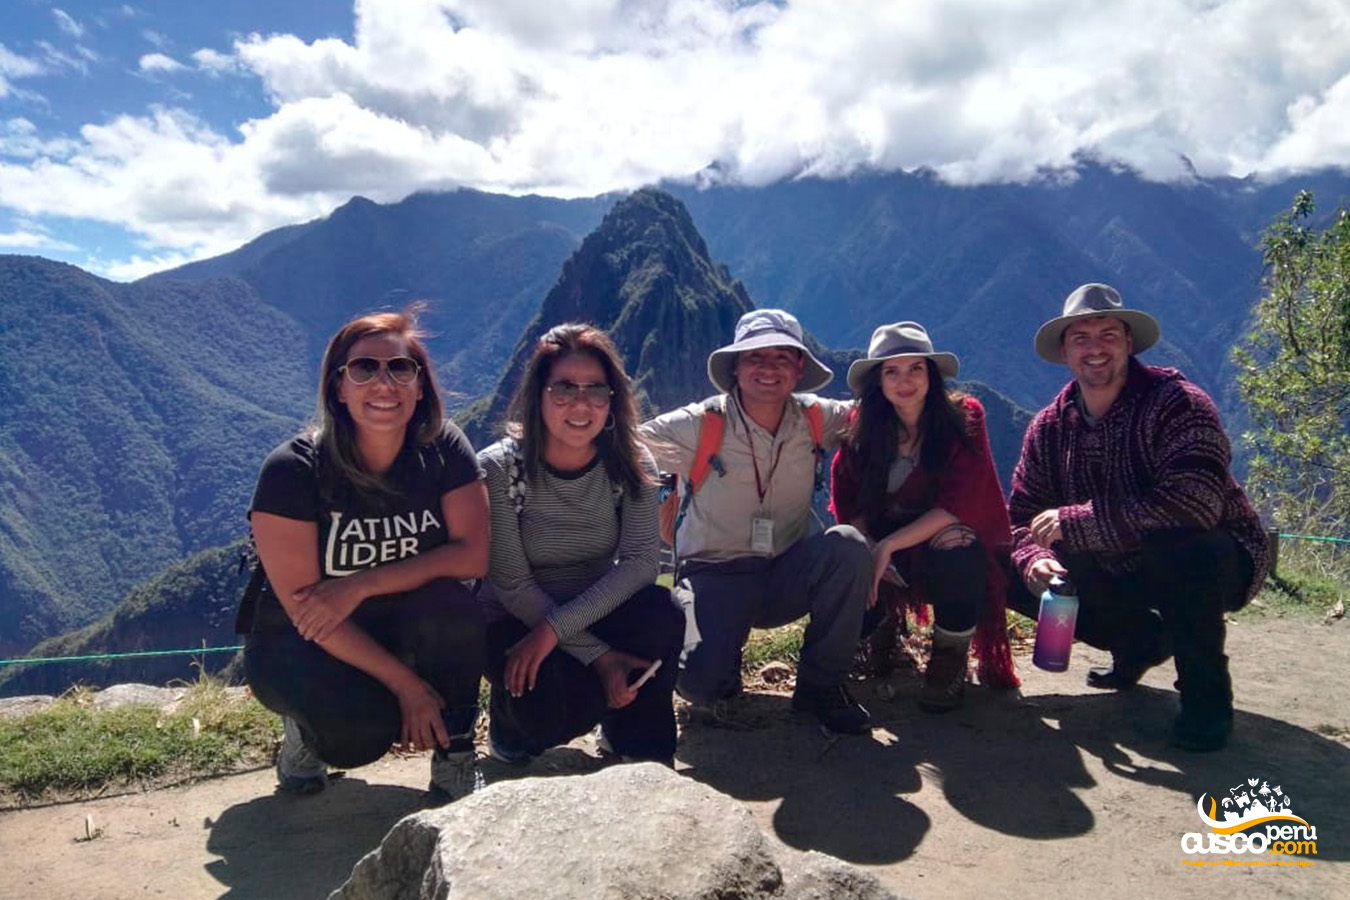 Tour guide with a group of tourists in Machu Picchu. Source: CuscoPeru.com